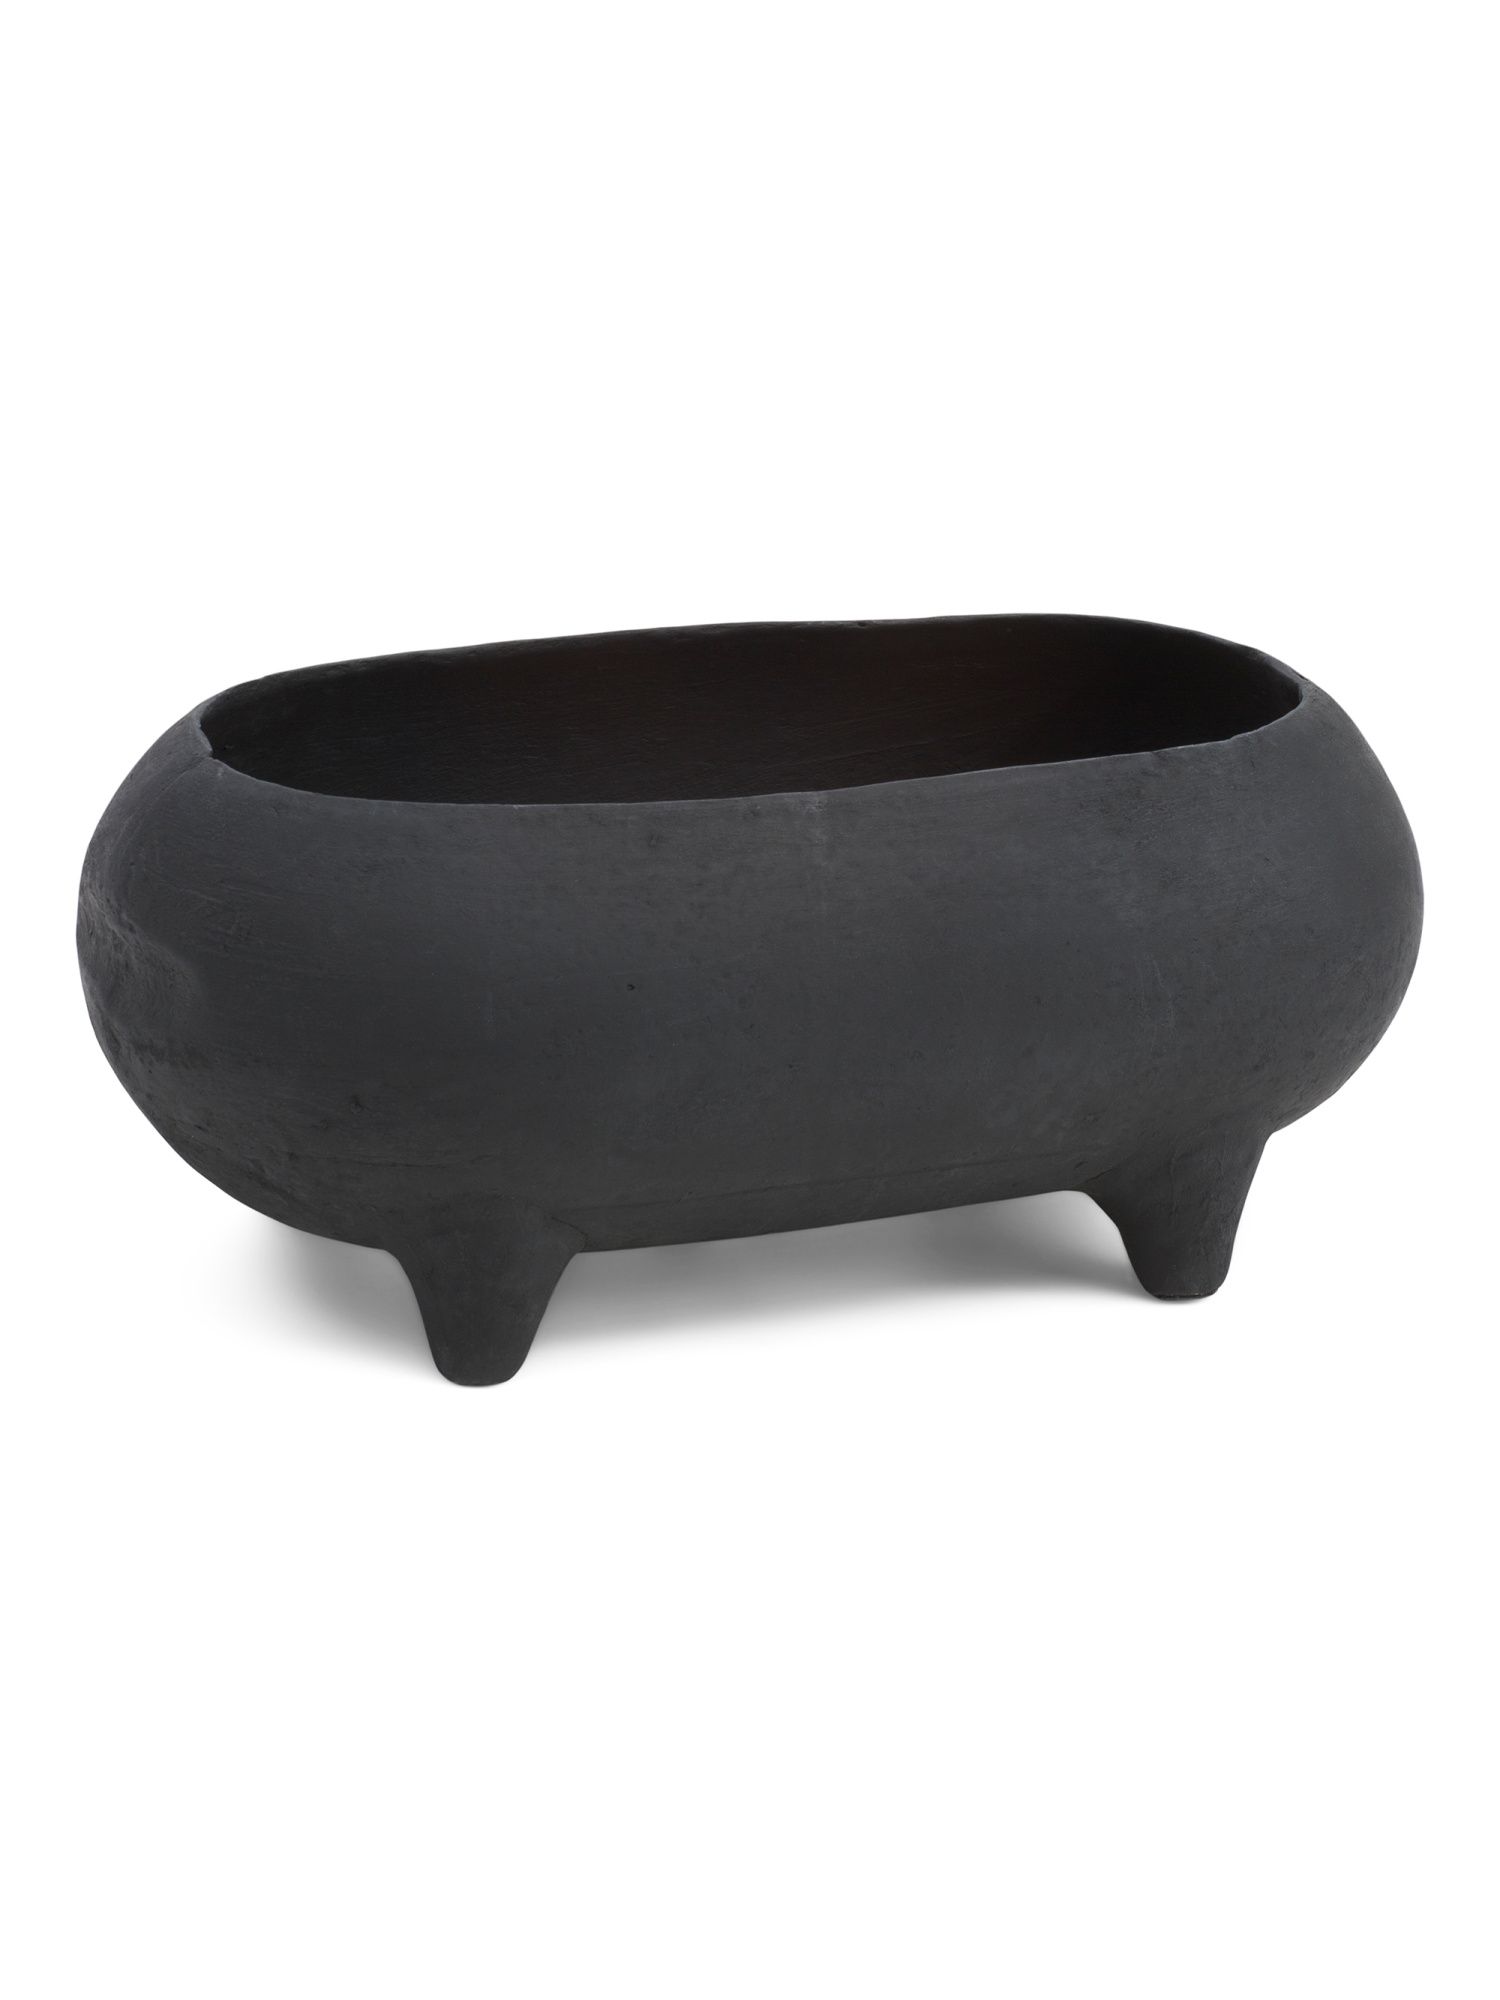 Footed Decorative Bowl | TJ Maxx